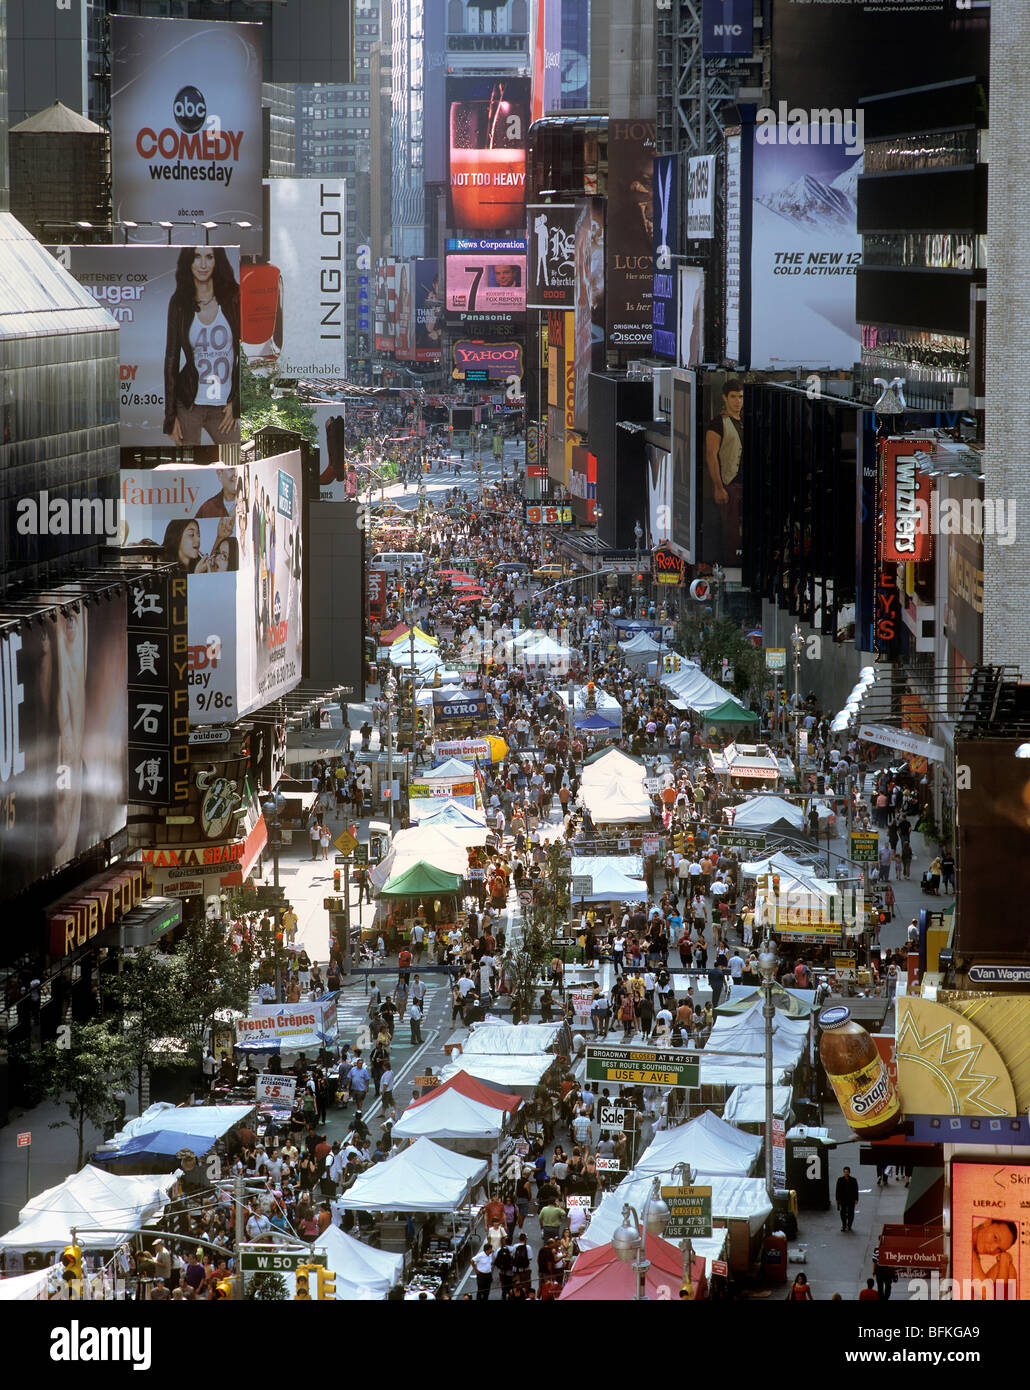 Un mercato di strada su Broadway, New York - hanno tenuto la domenica quando la strada è chiusa al traffico. Times Square è in background. Foto Stock